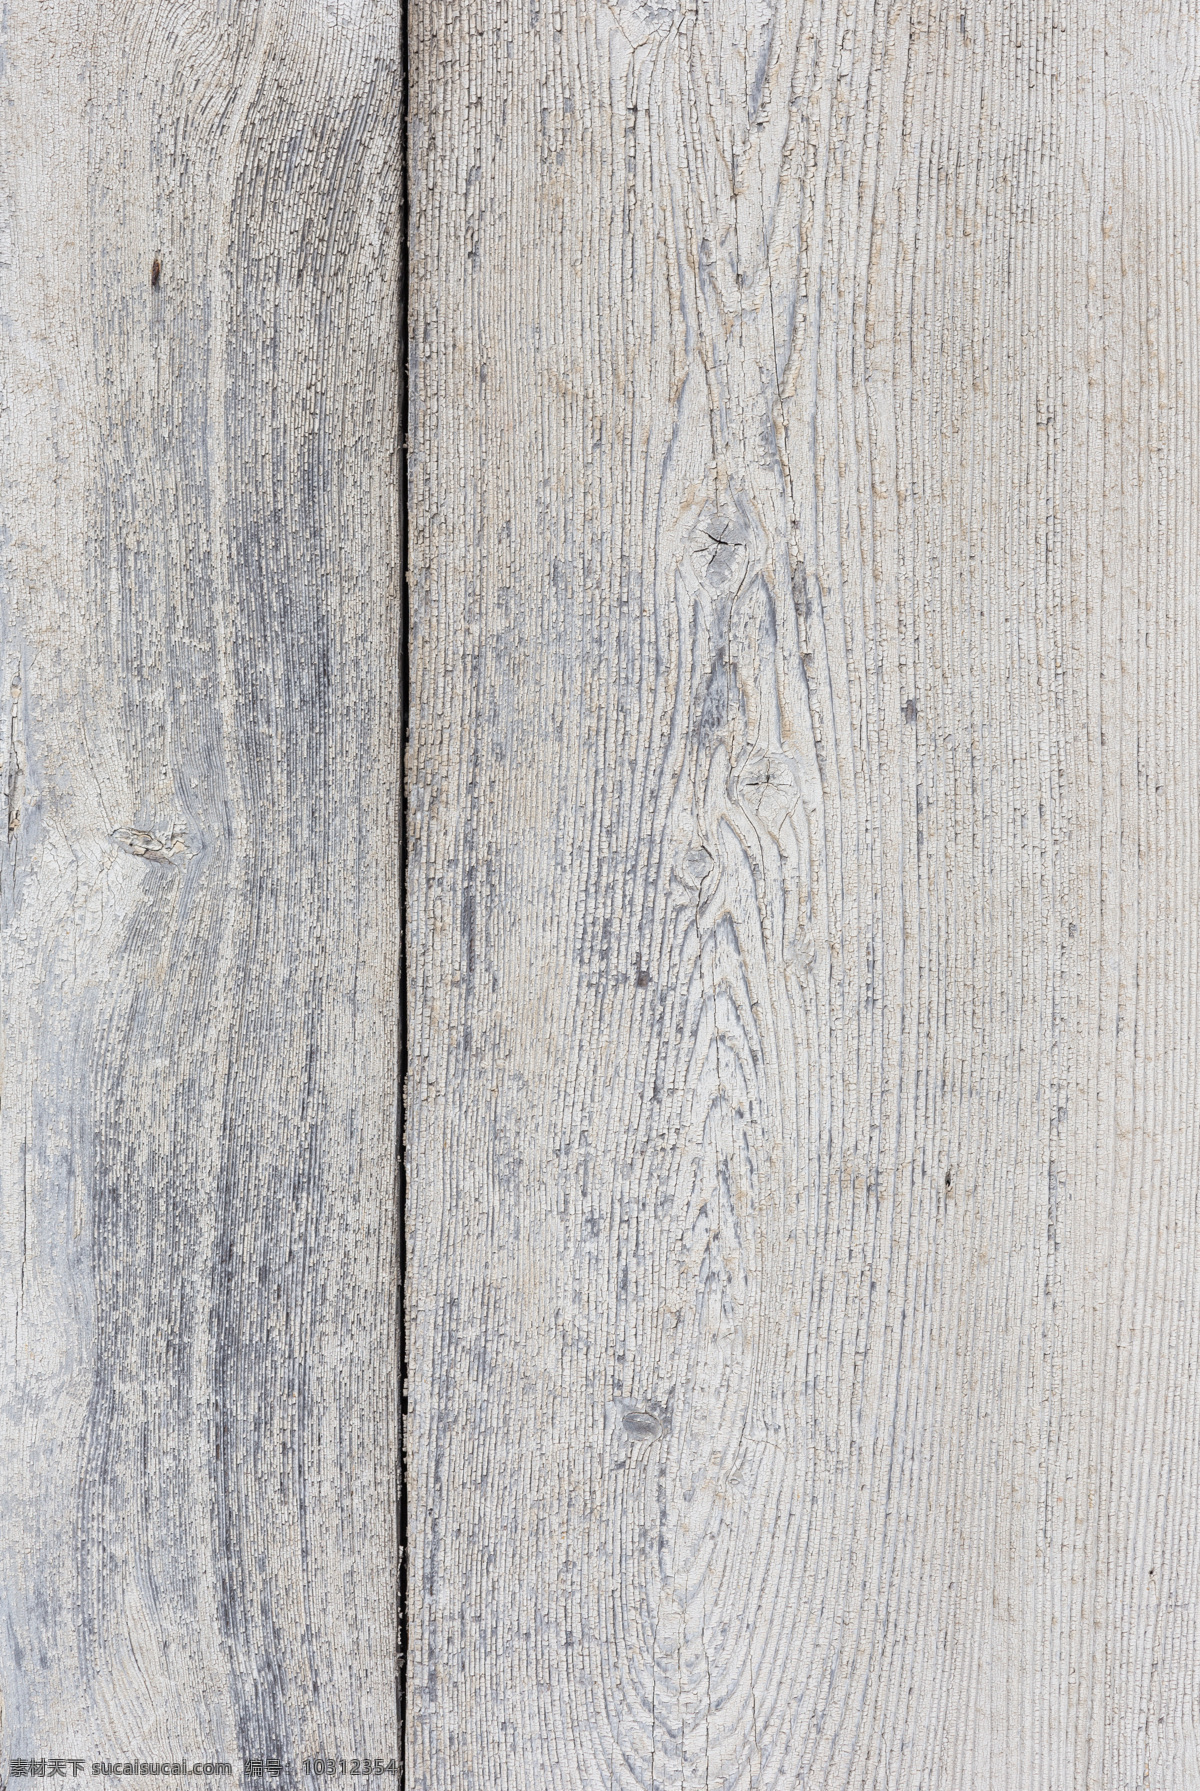 白色 木板 纹理 贴图 木纹 背景素材 材质贴图 高清木纹 木地板 堆叠木纹 高清 室内设计 木纹纹理 木质纹理 地板 木头 木板背景